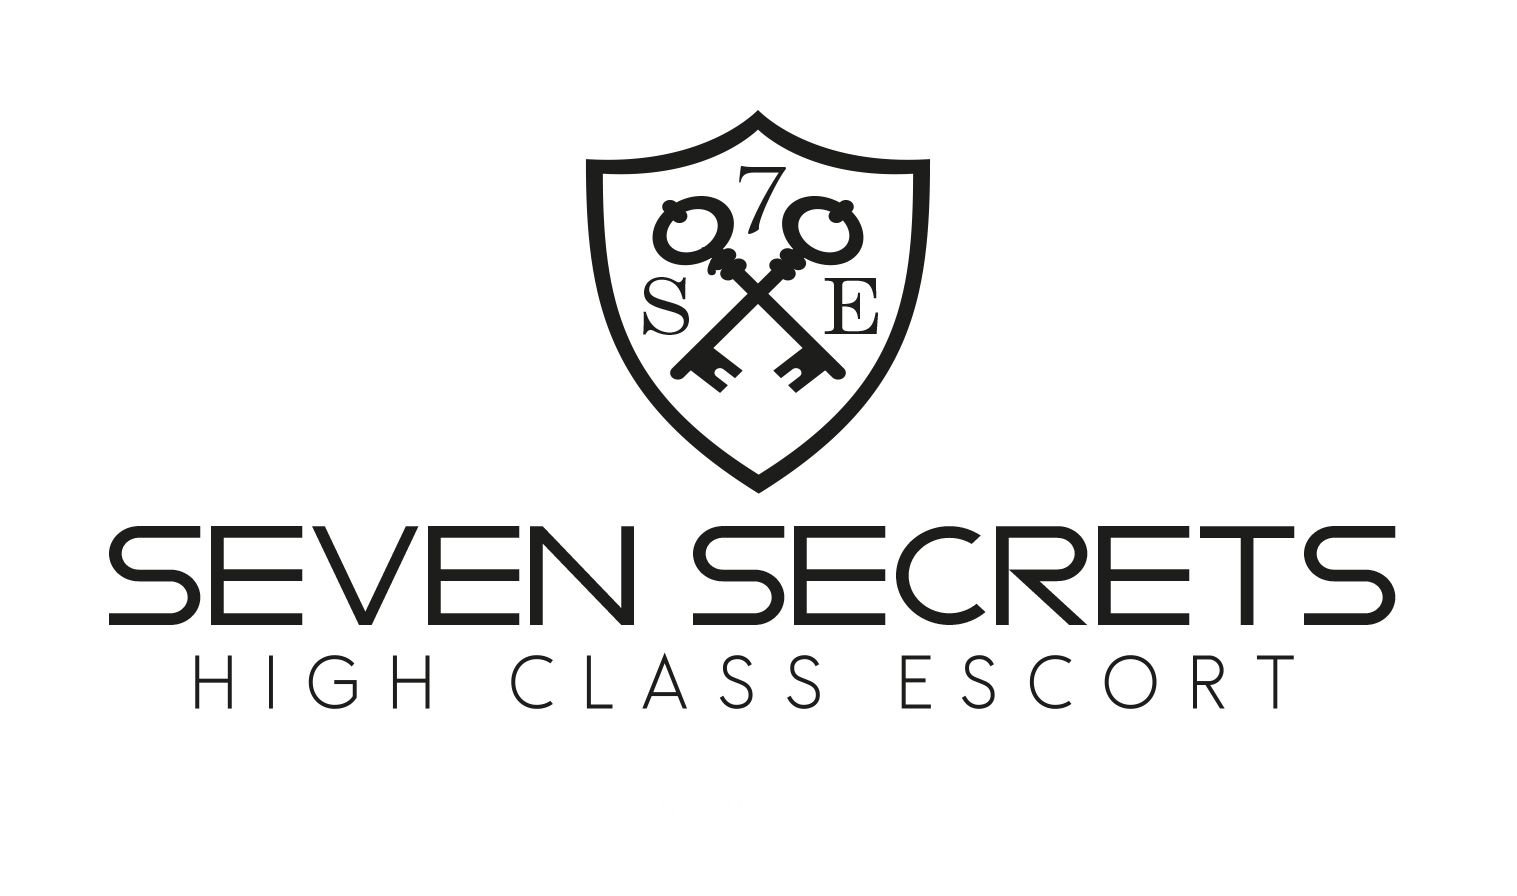 Finden Sie die besten Escort-Agenturen in Luzern - place 7 Secrets Escort